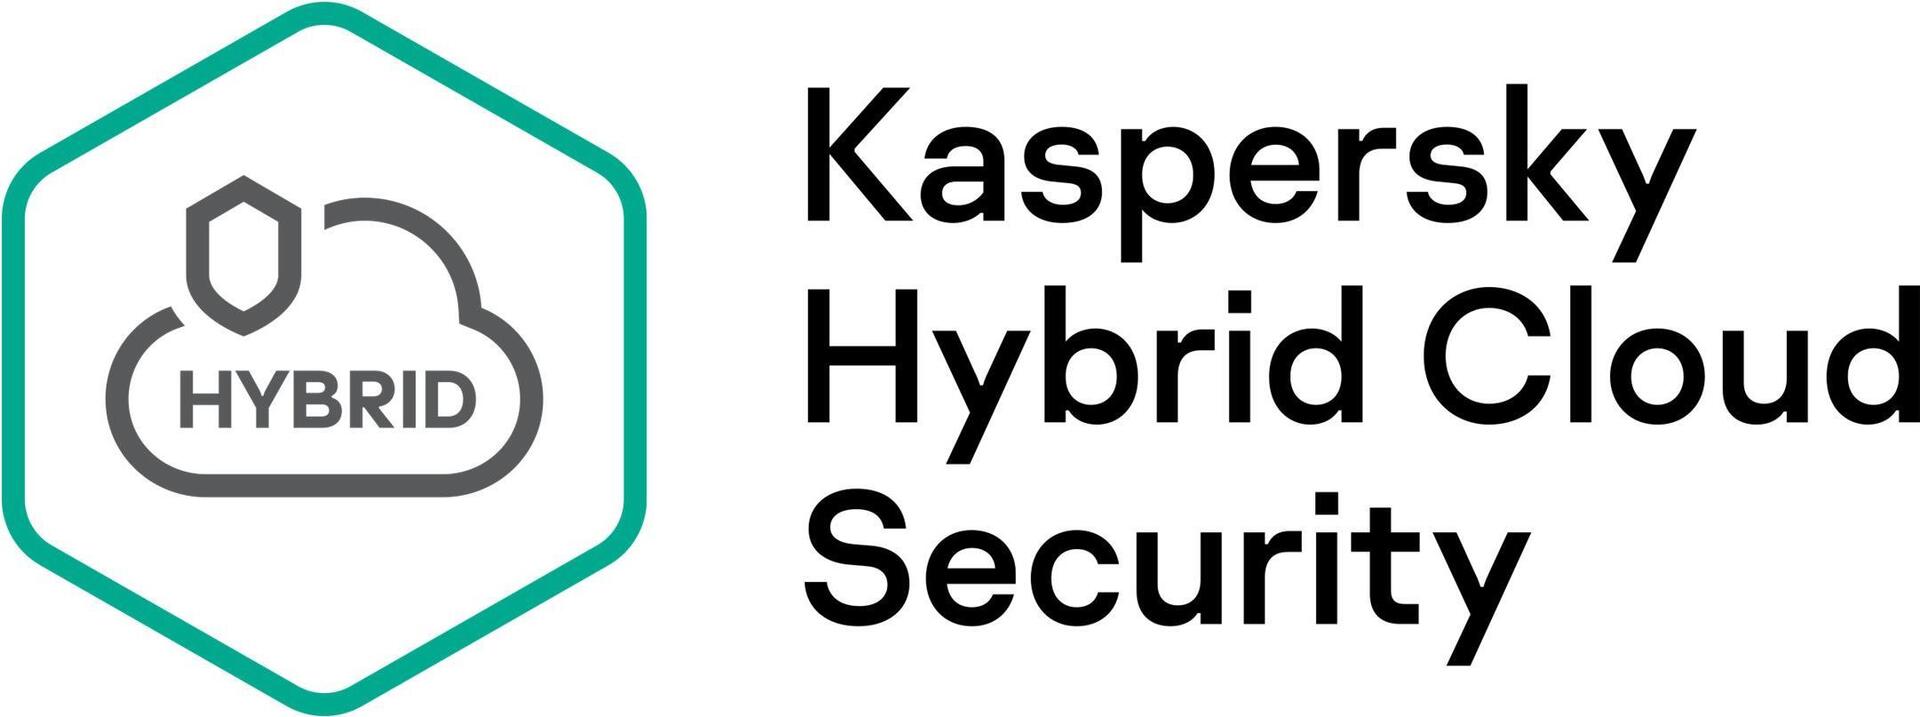 Kaspersky Hybrid Cloud Security (KL4554XAED9)